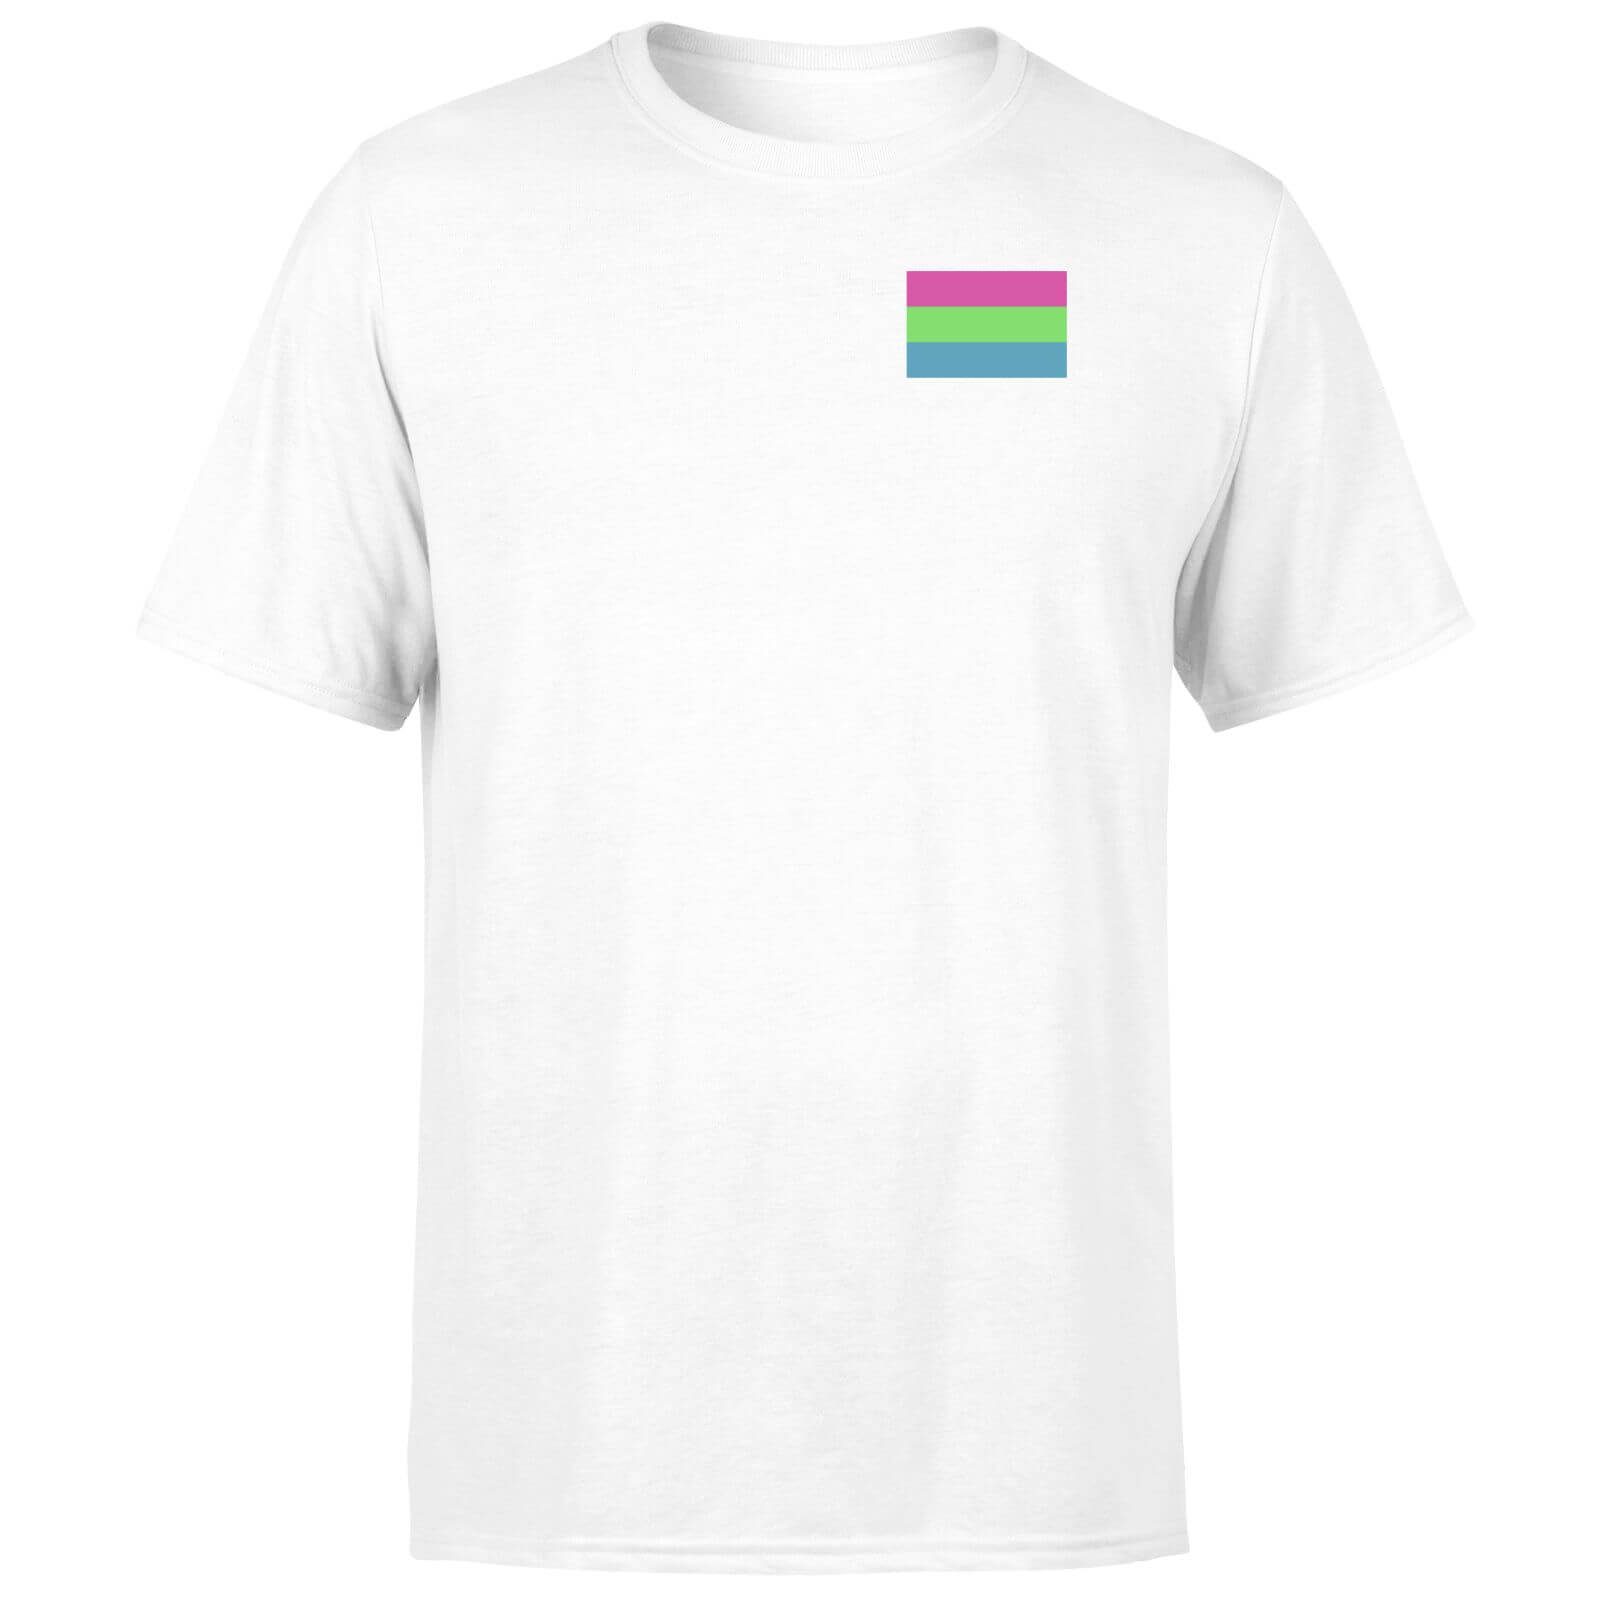 Polysexual Flag T-Shirt - White - XS - White